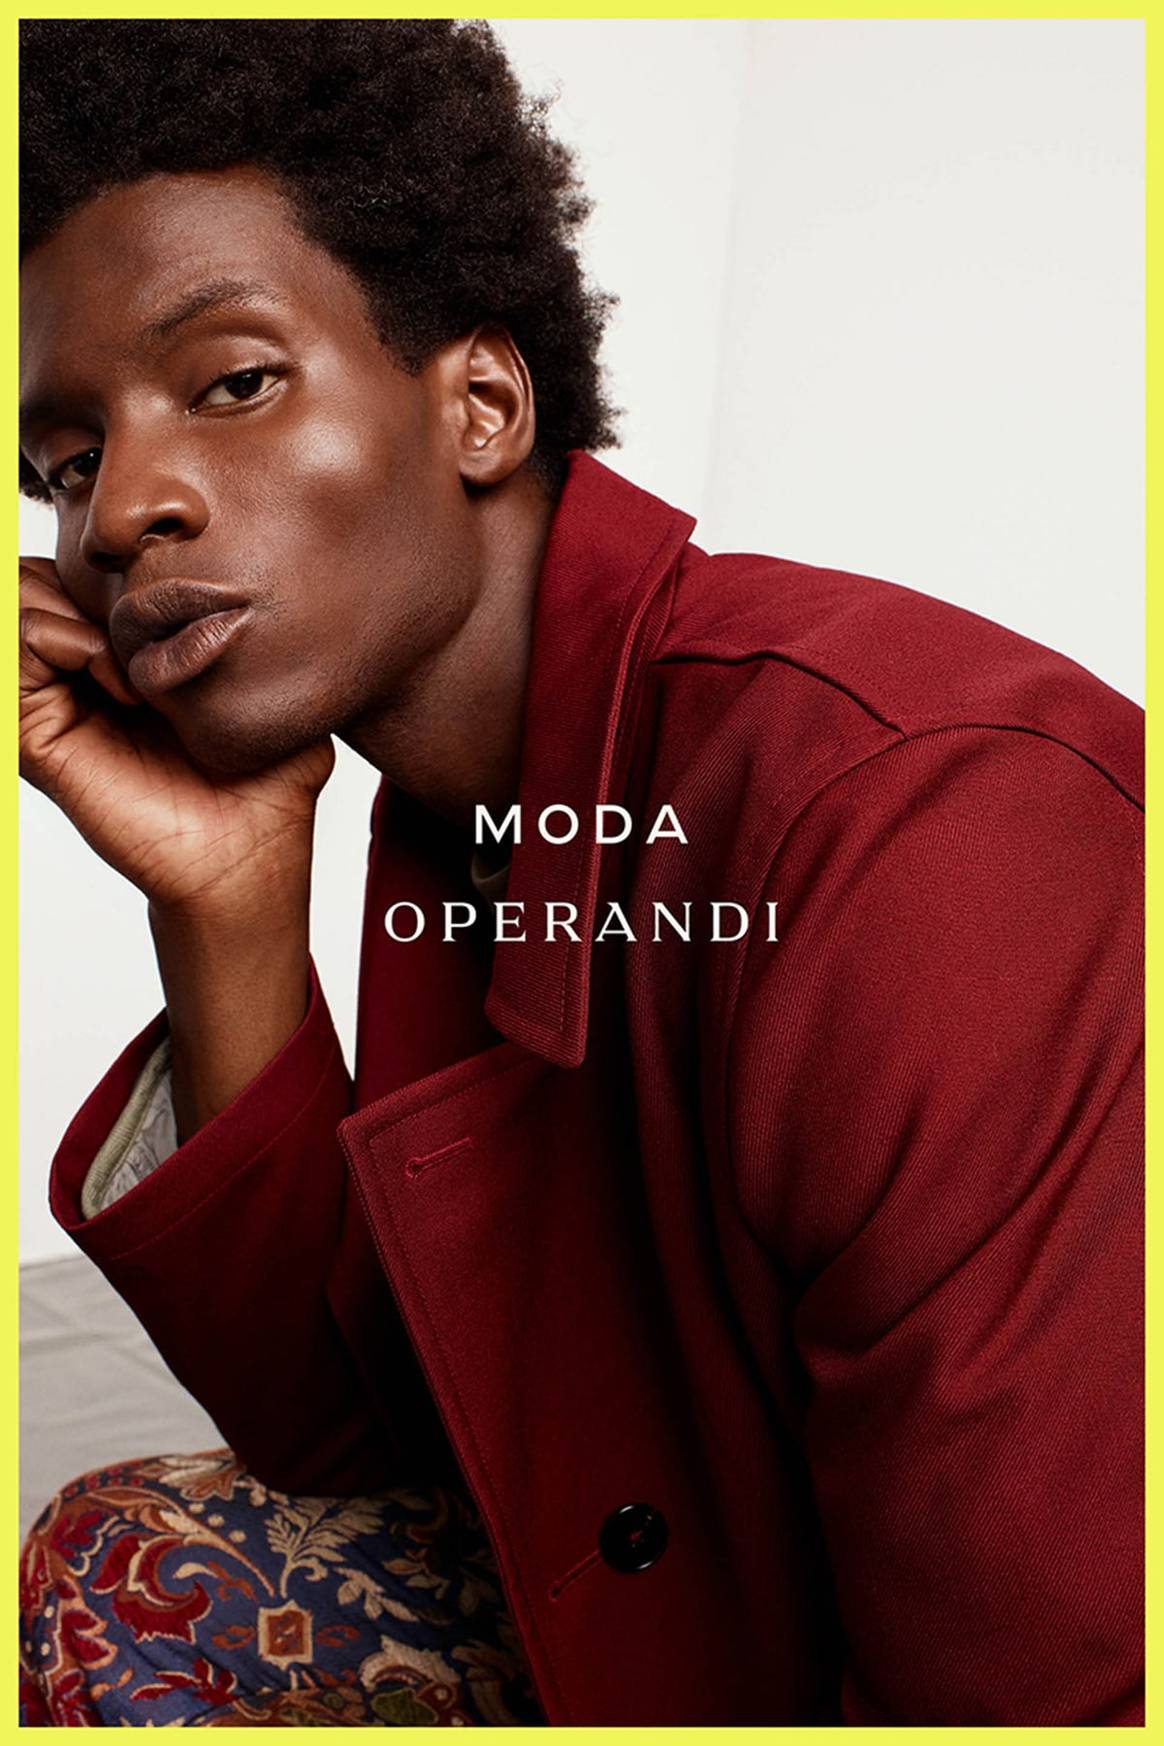 Moda Operandi launches a new brand identity